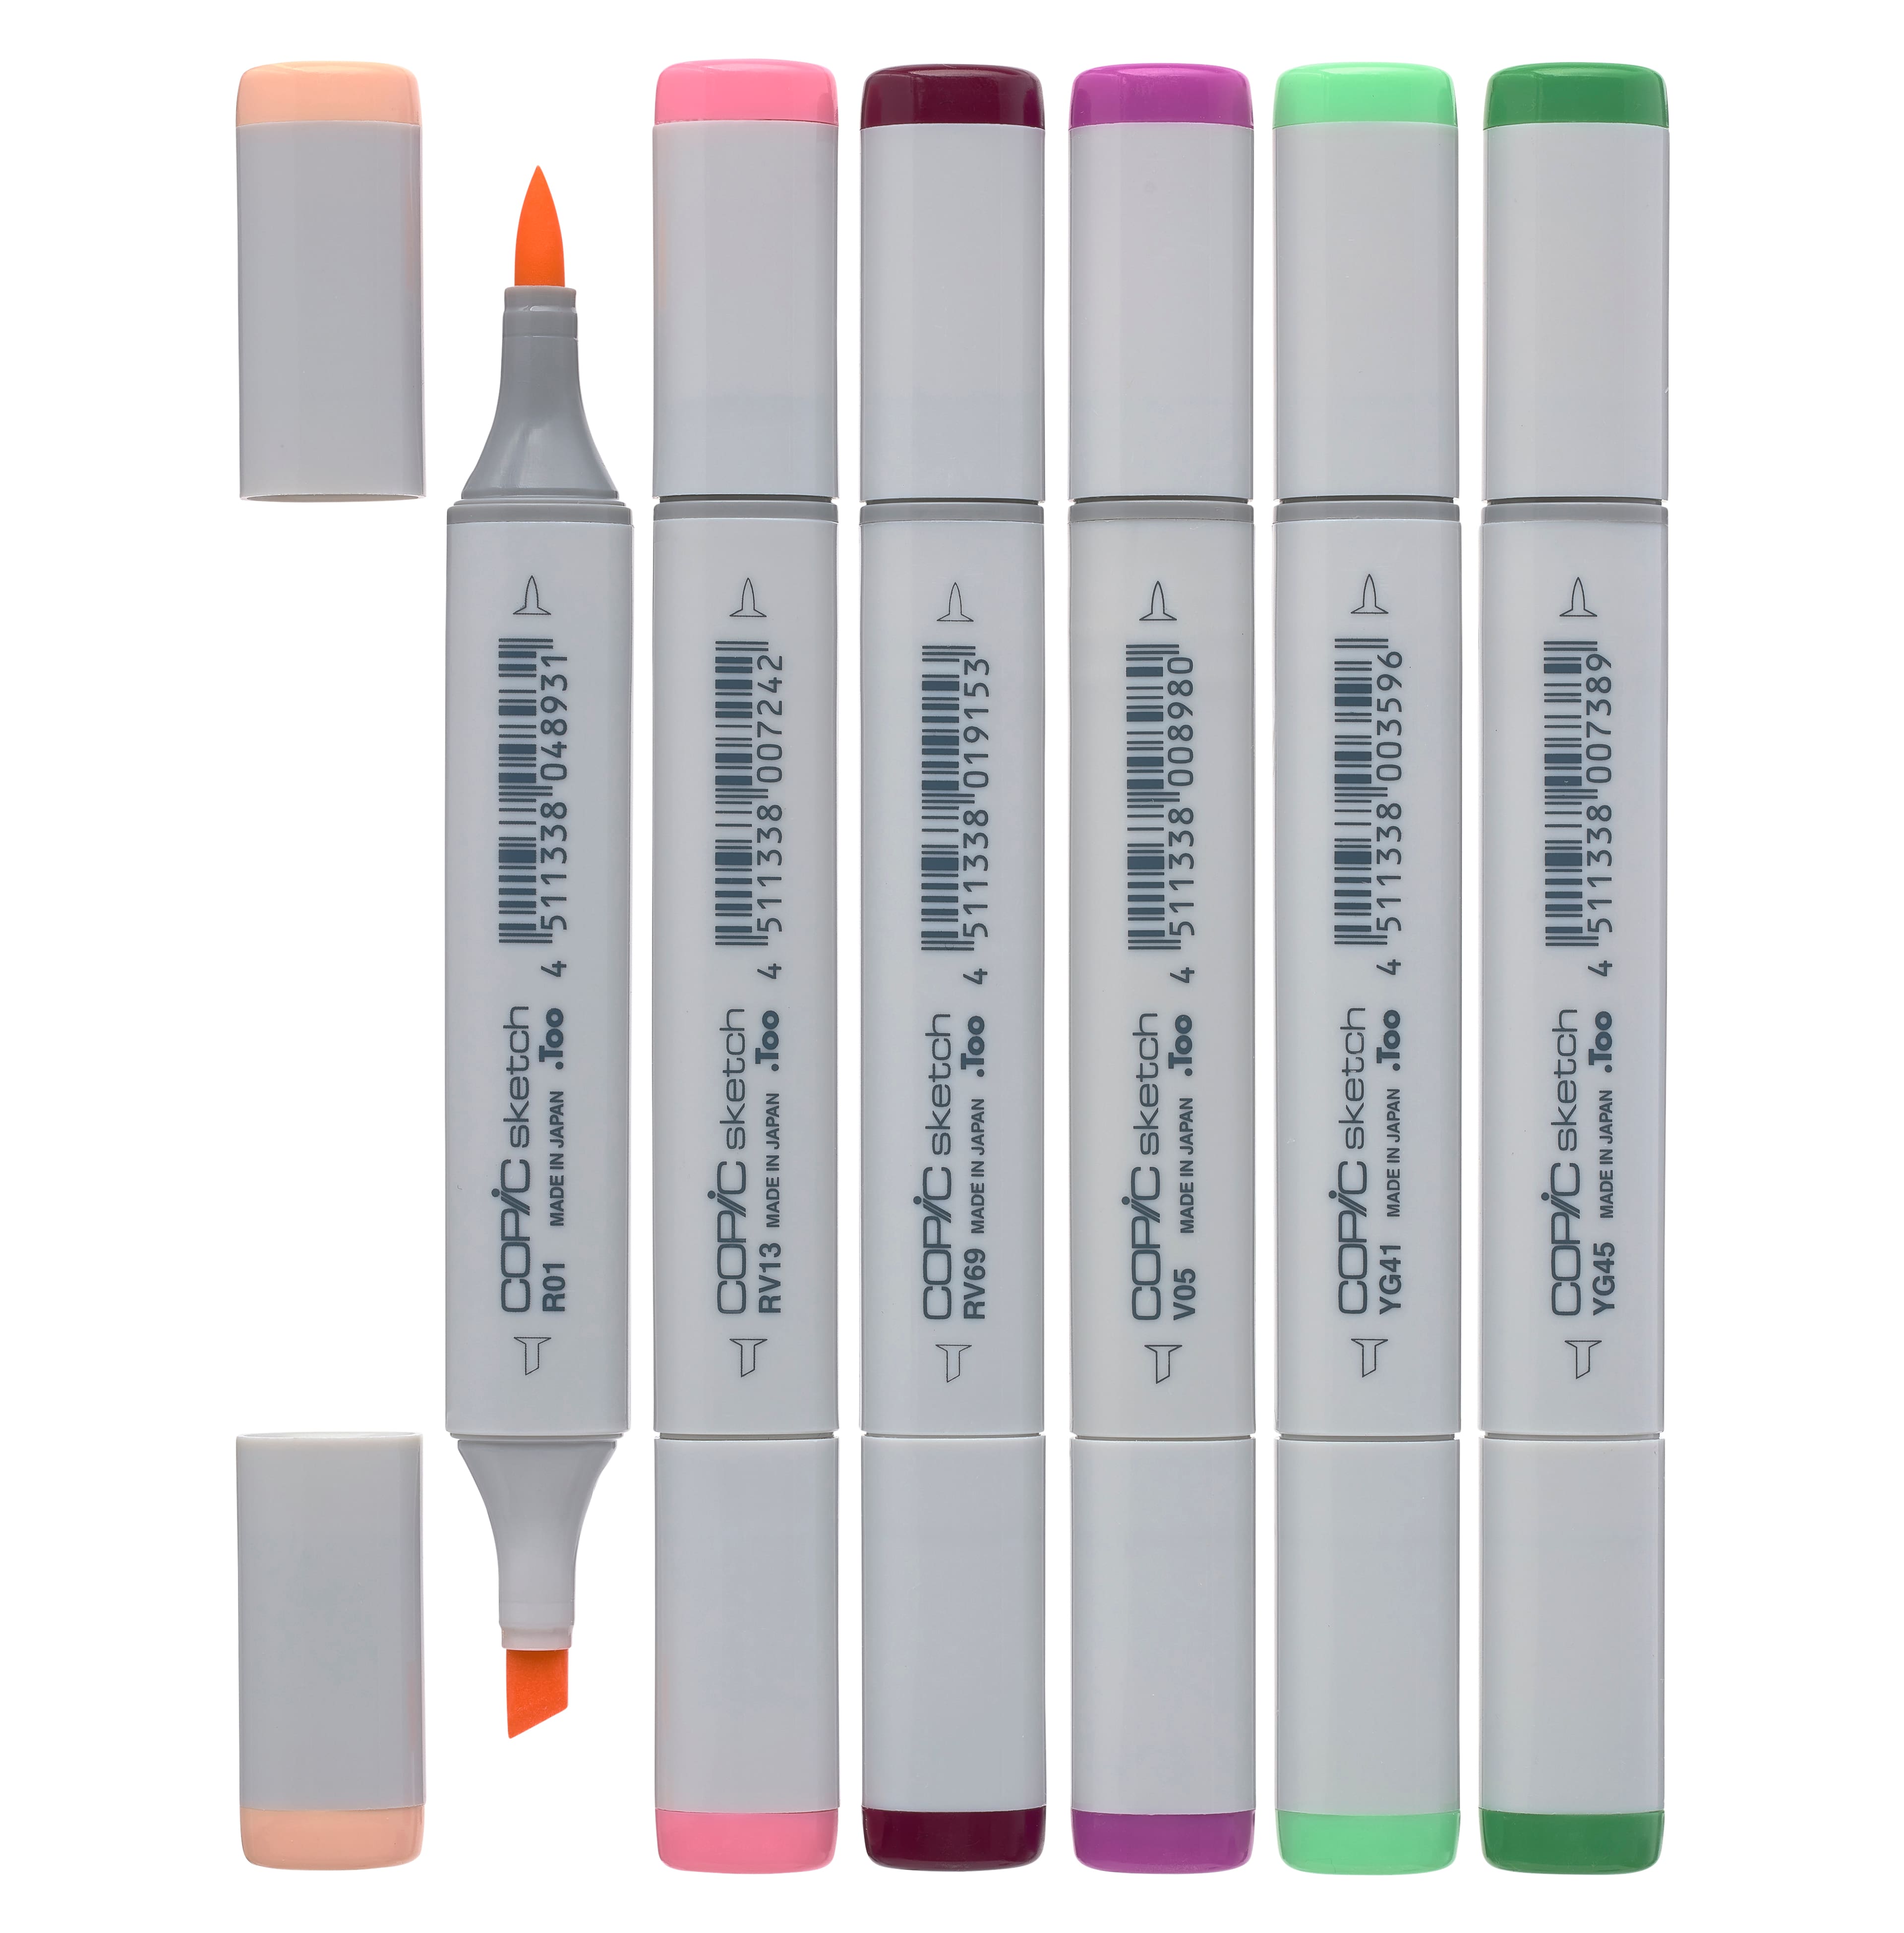 Copic Sketch Marker 6-Color Set - Floral Favorites 1